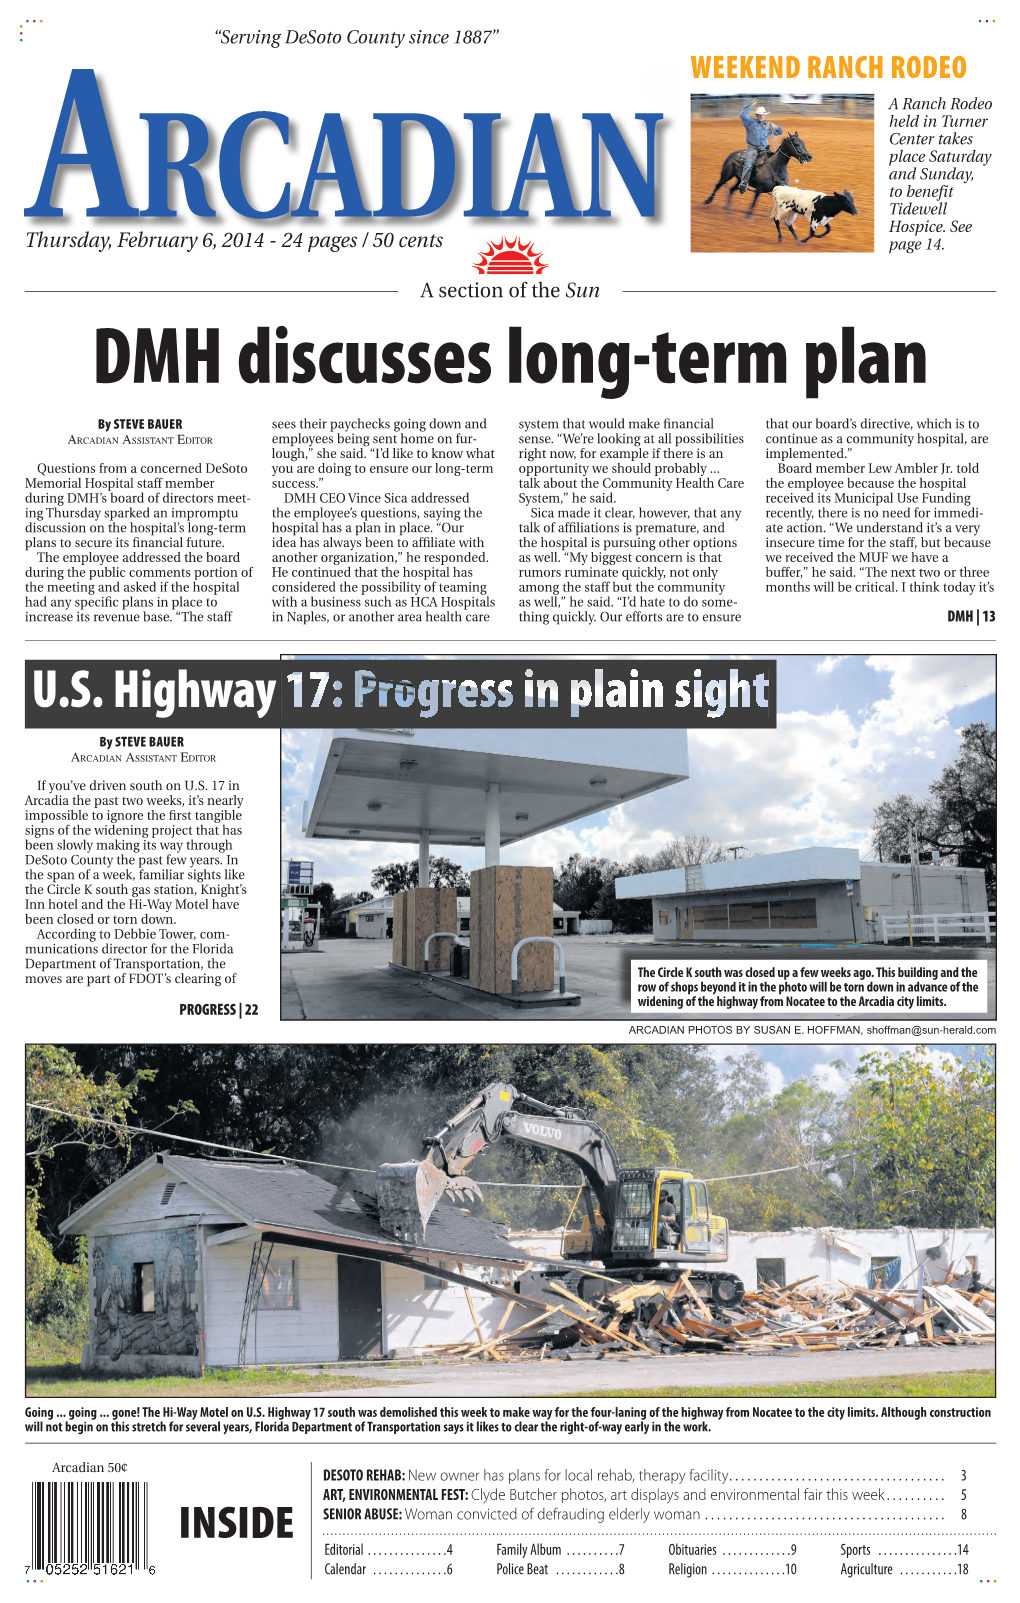 DMH Discusses Long-Term Plan